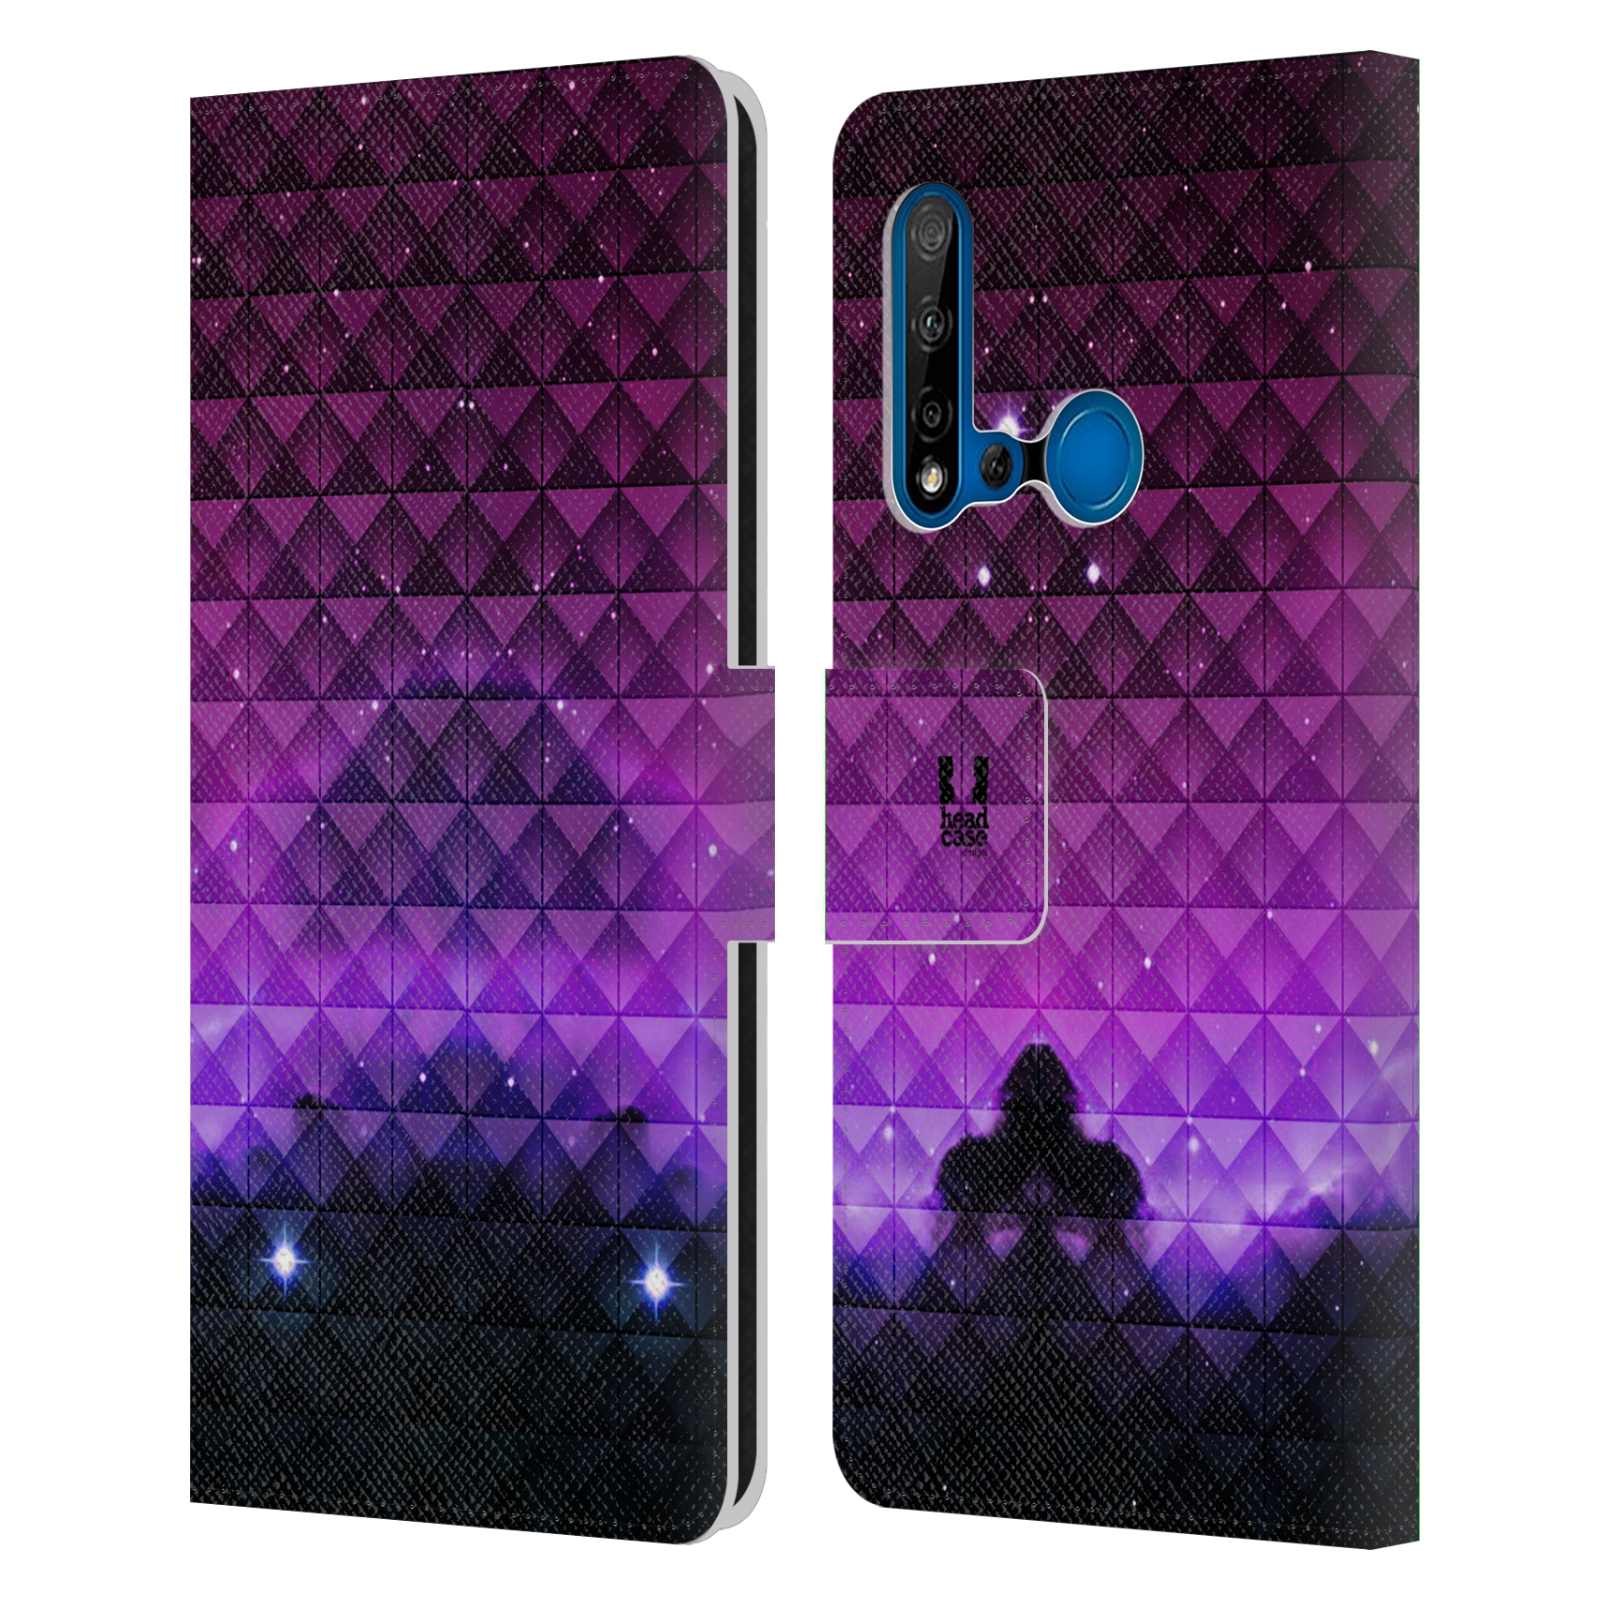 Pouzdro na mobil Huawei P20 LITE 2019 barevná vesmírná mlhovina fialová a černá